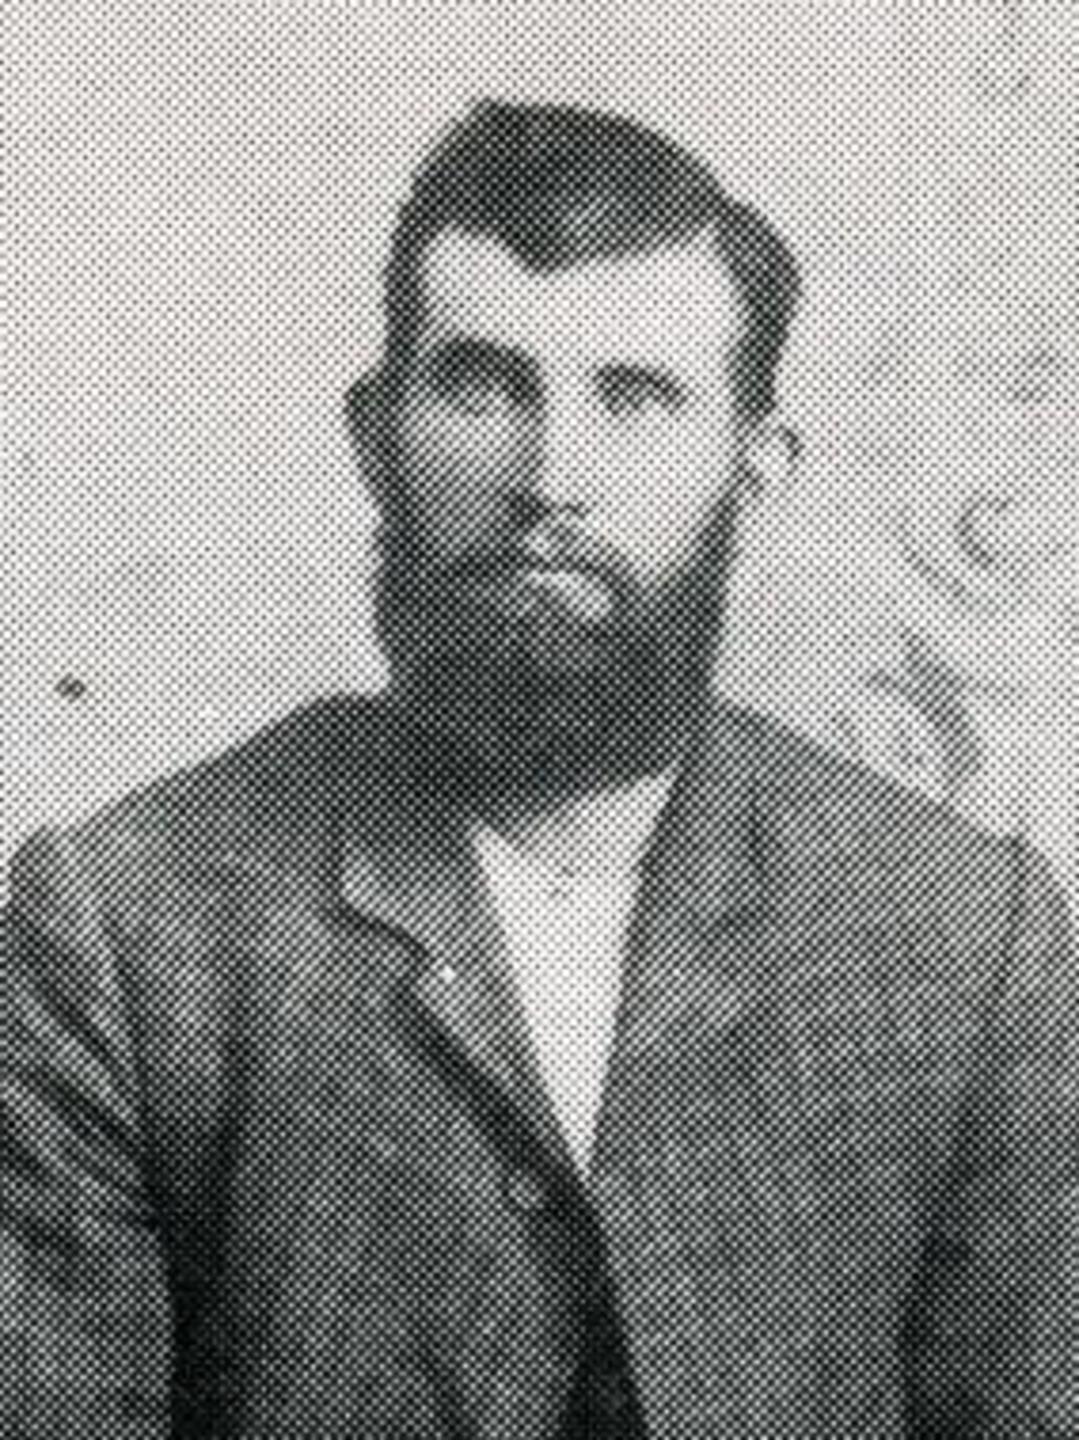 William Coon (1837 - 1907) Profile